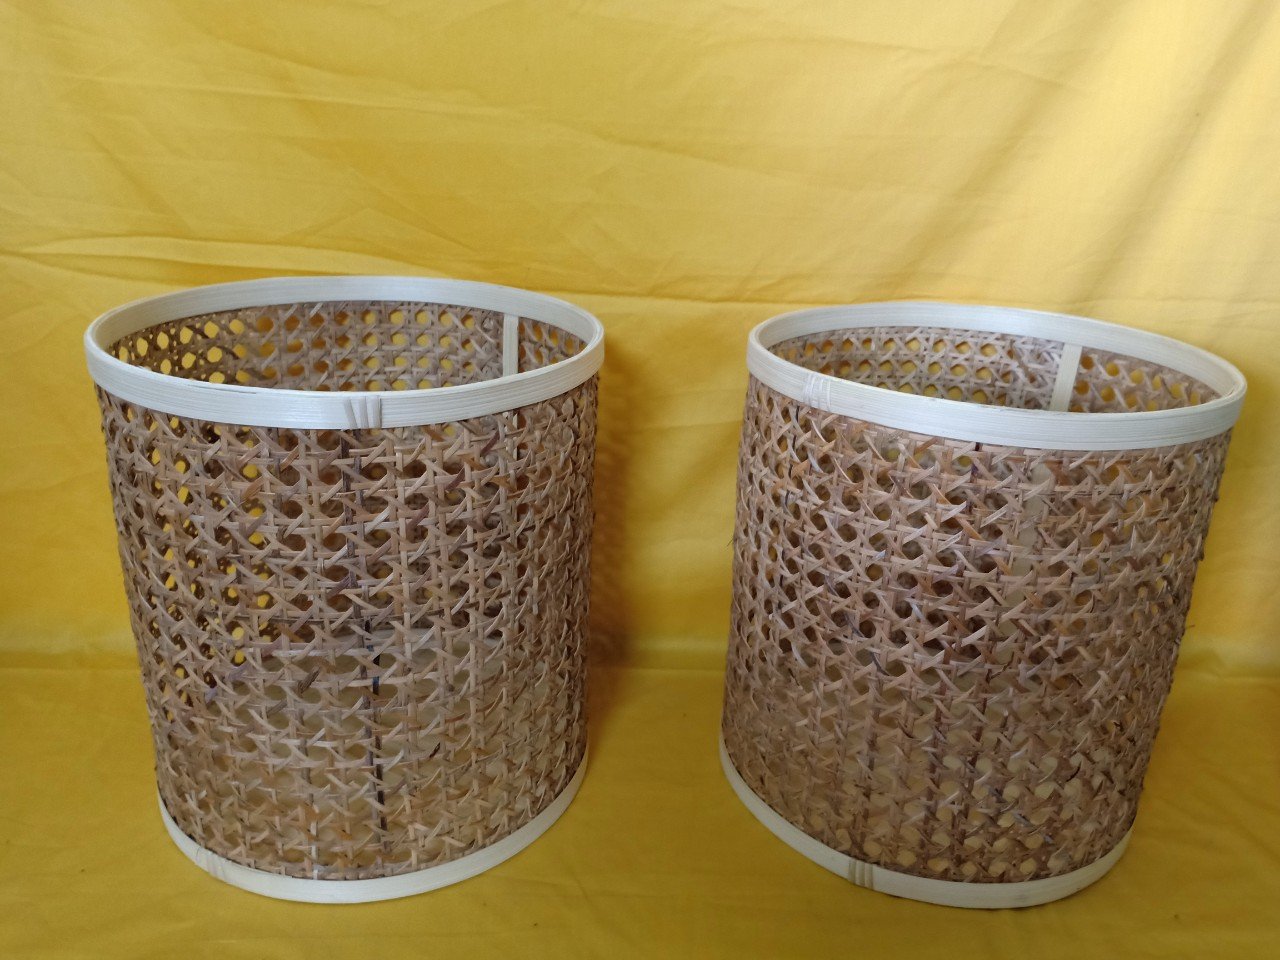 Bamboo gift baskets